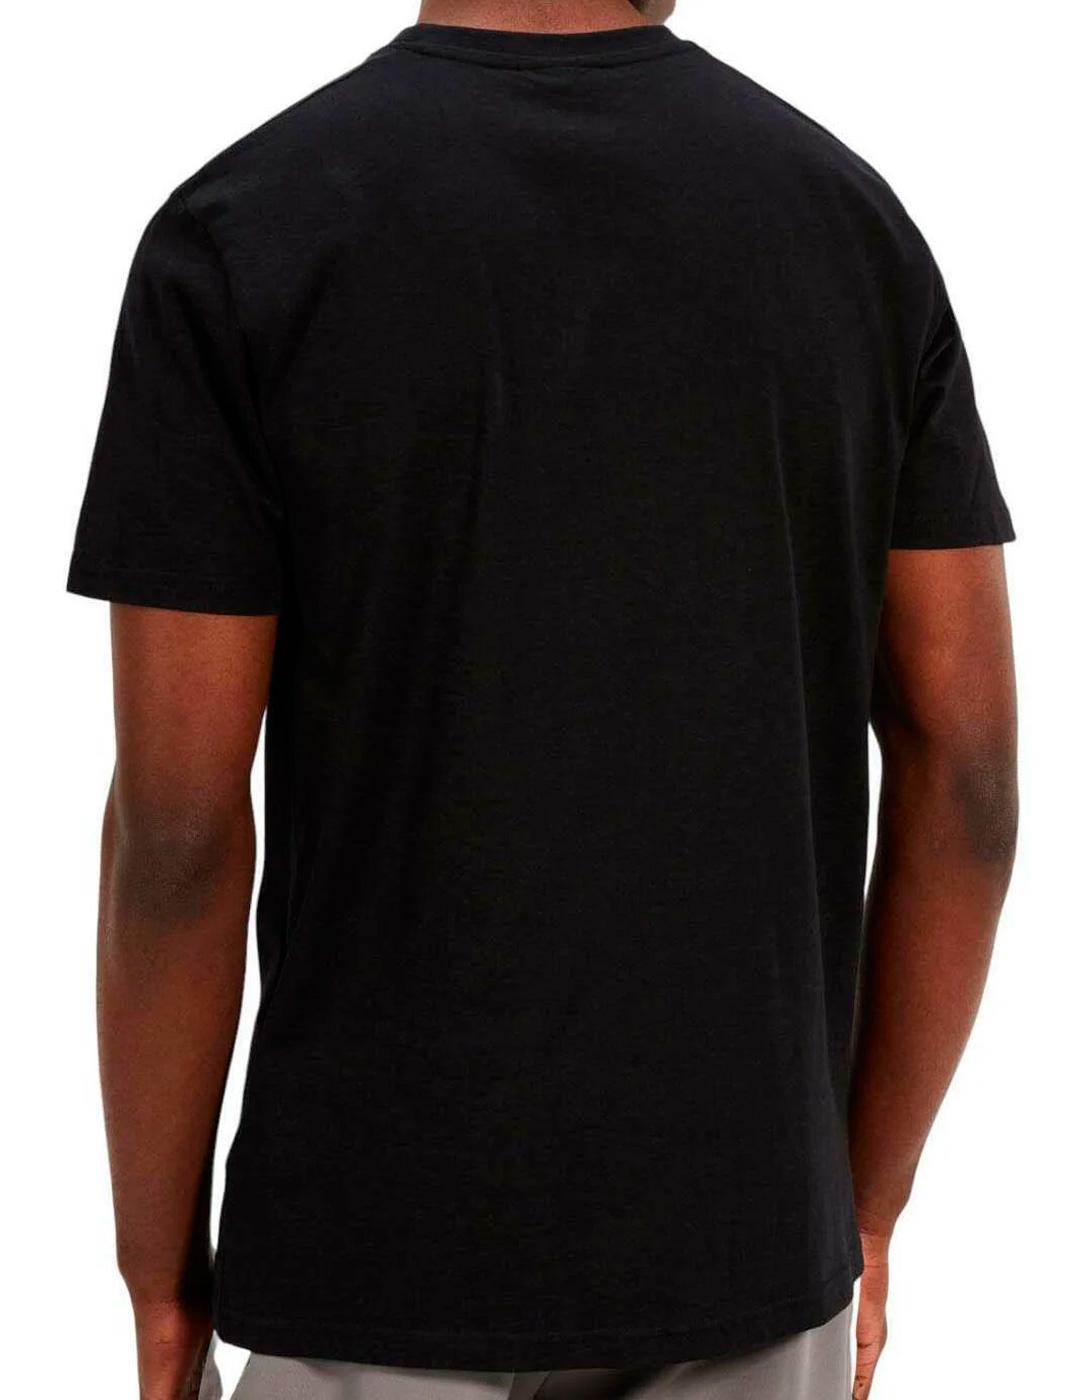 Camiseta Ellesse 'Astrio' Negro